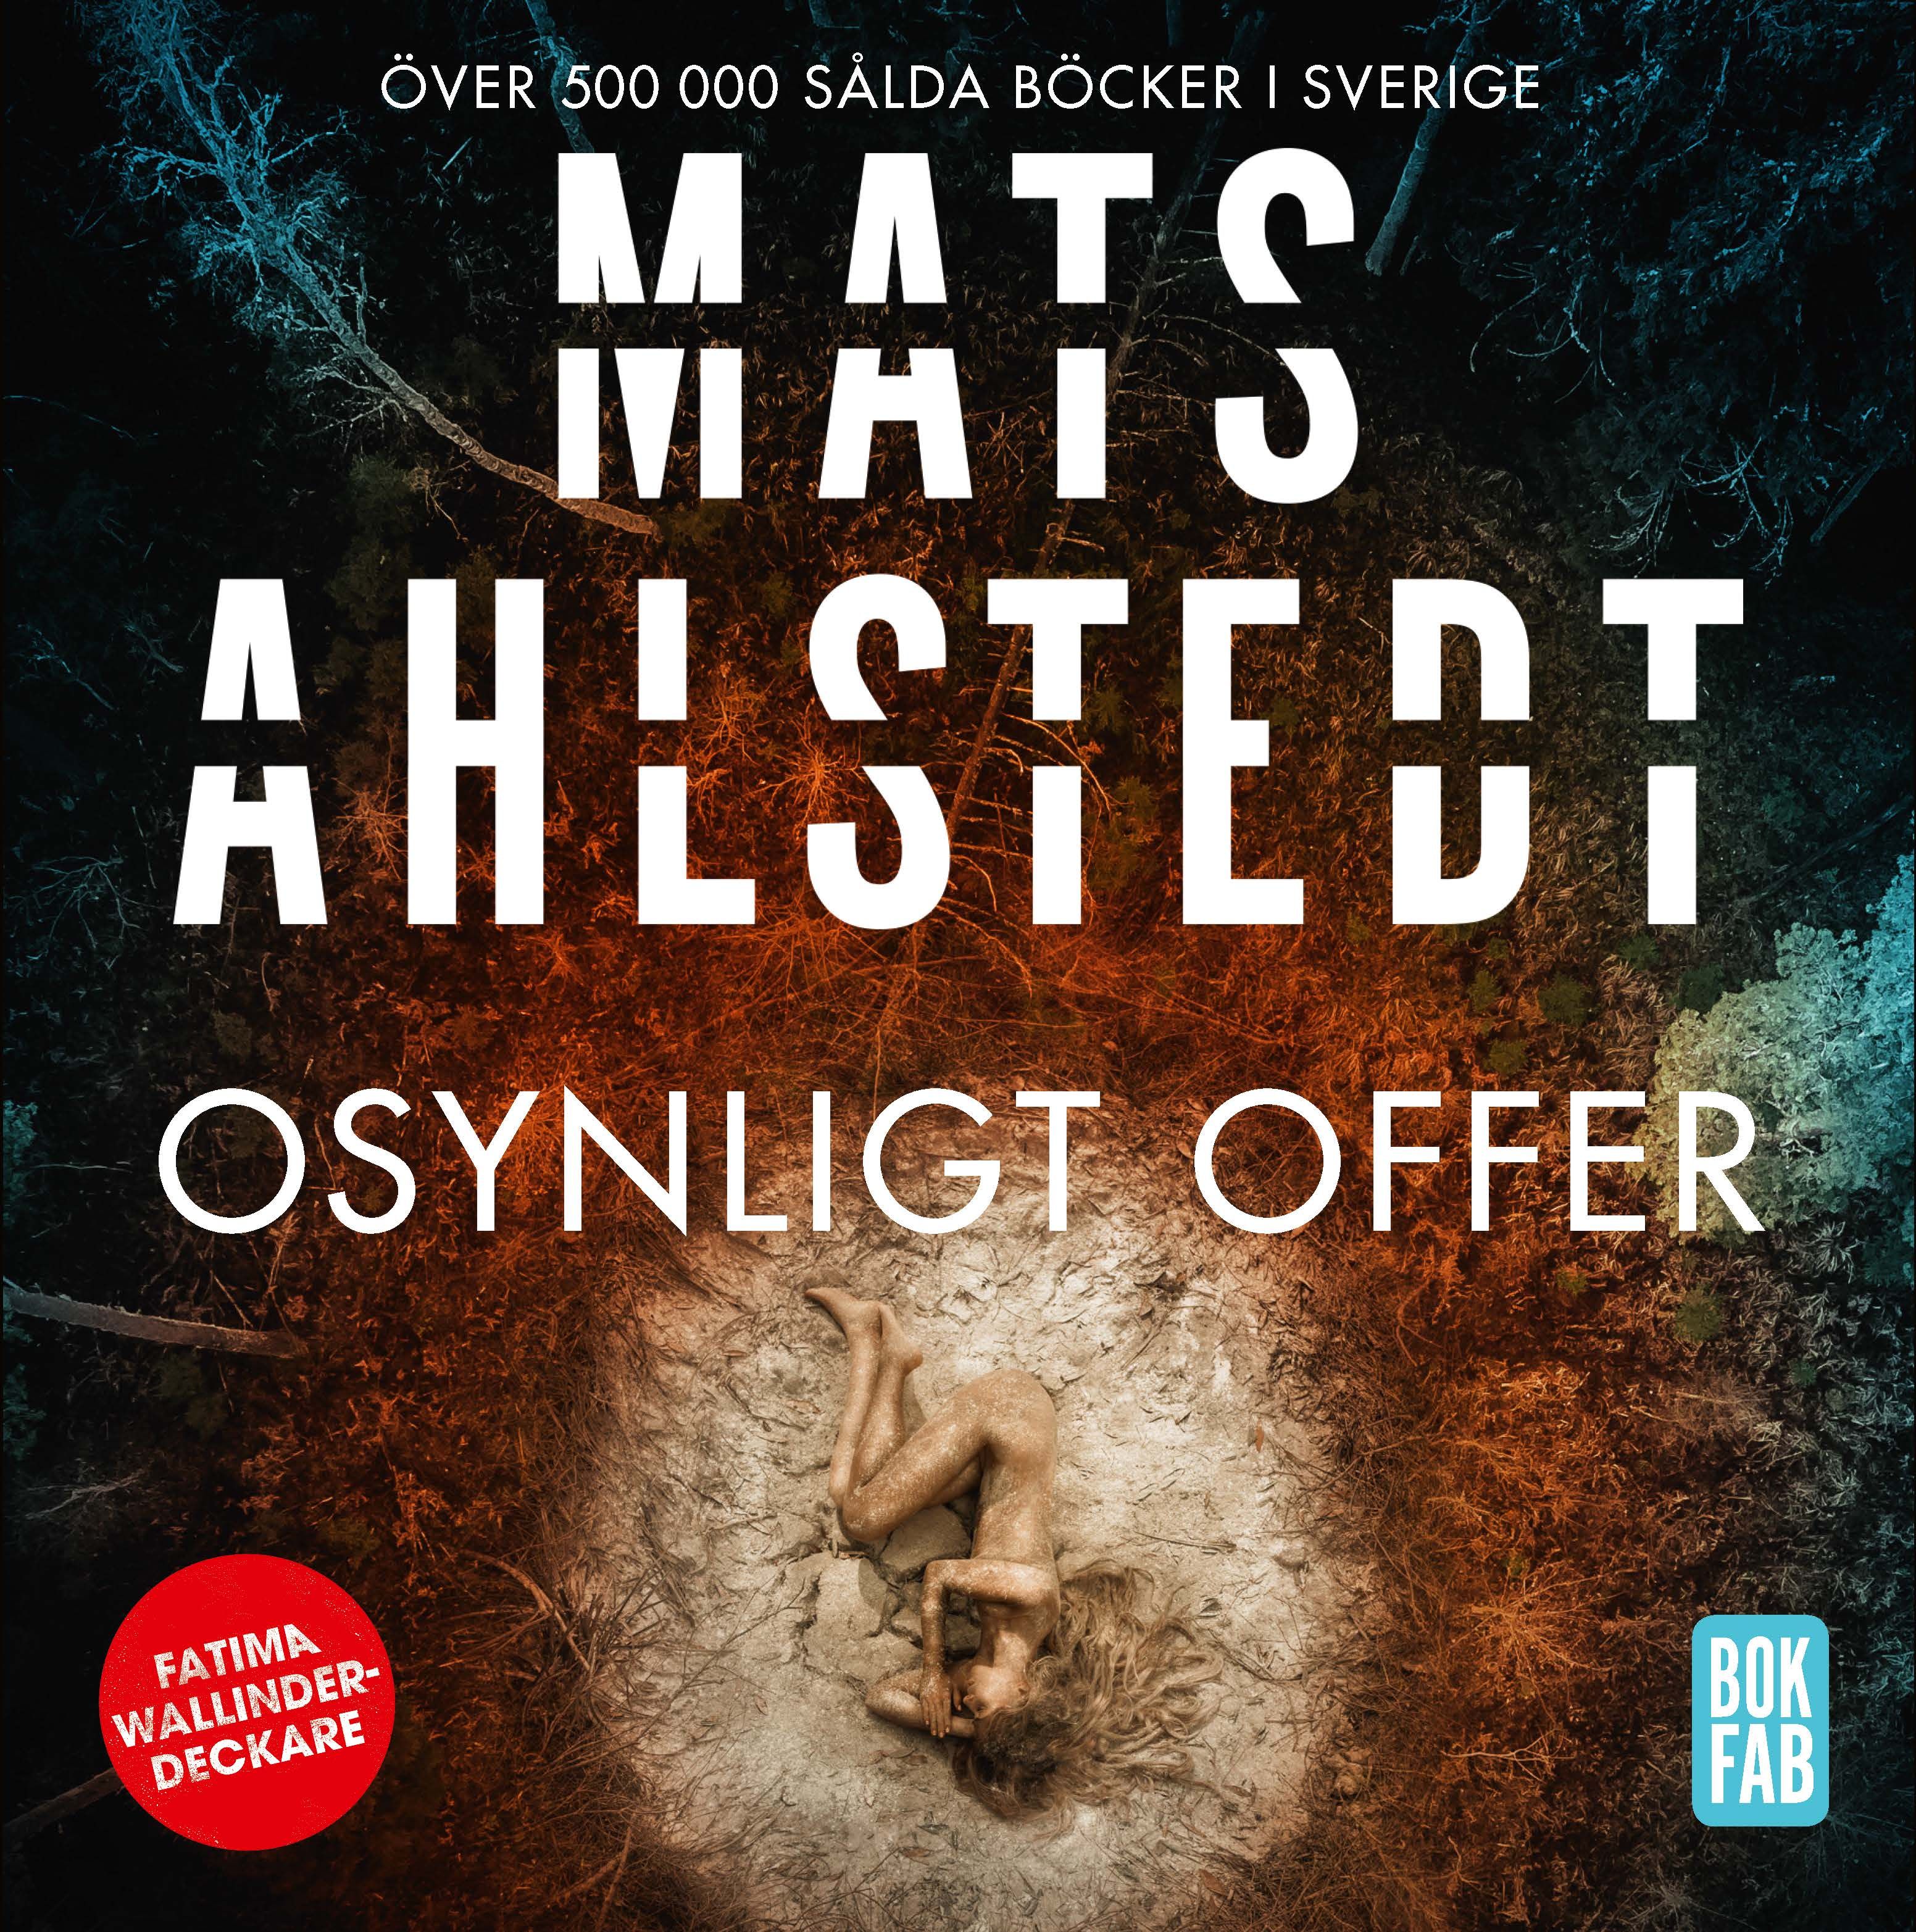 Osynligt offer, audiobook by Mats Ahlstedt